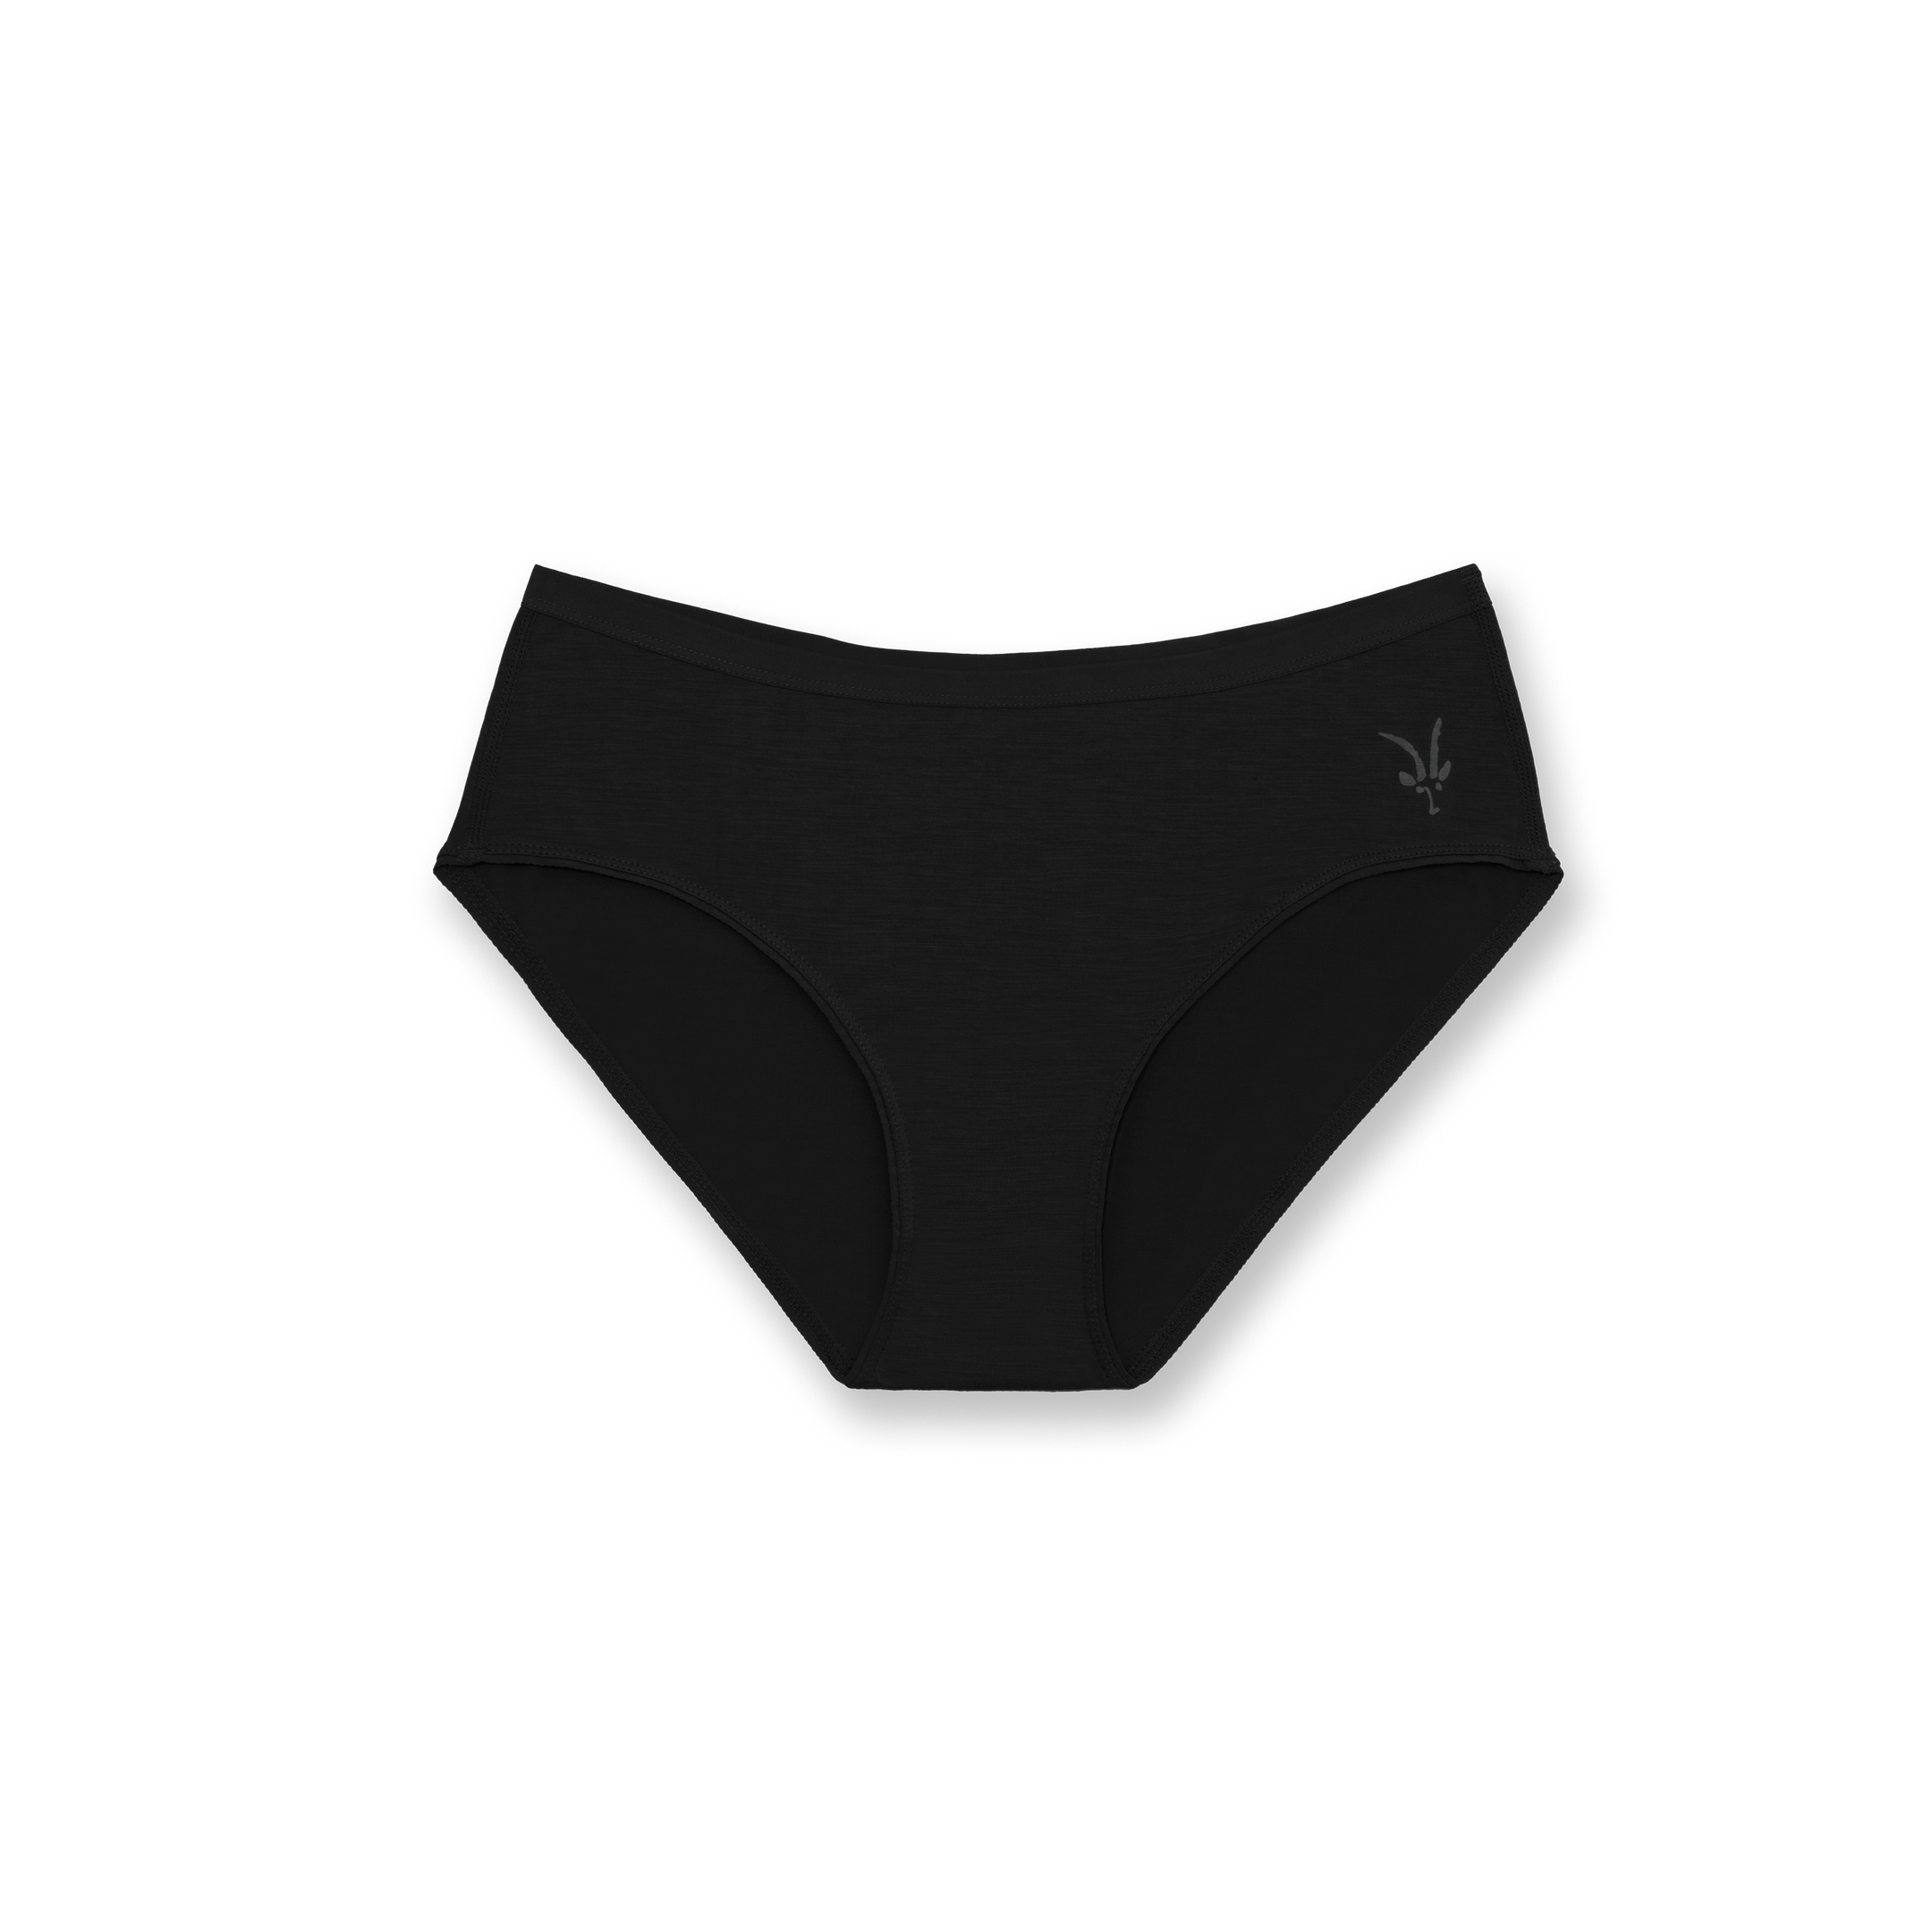 Kepler Boxers Women's Ultrafine Merino Underwear